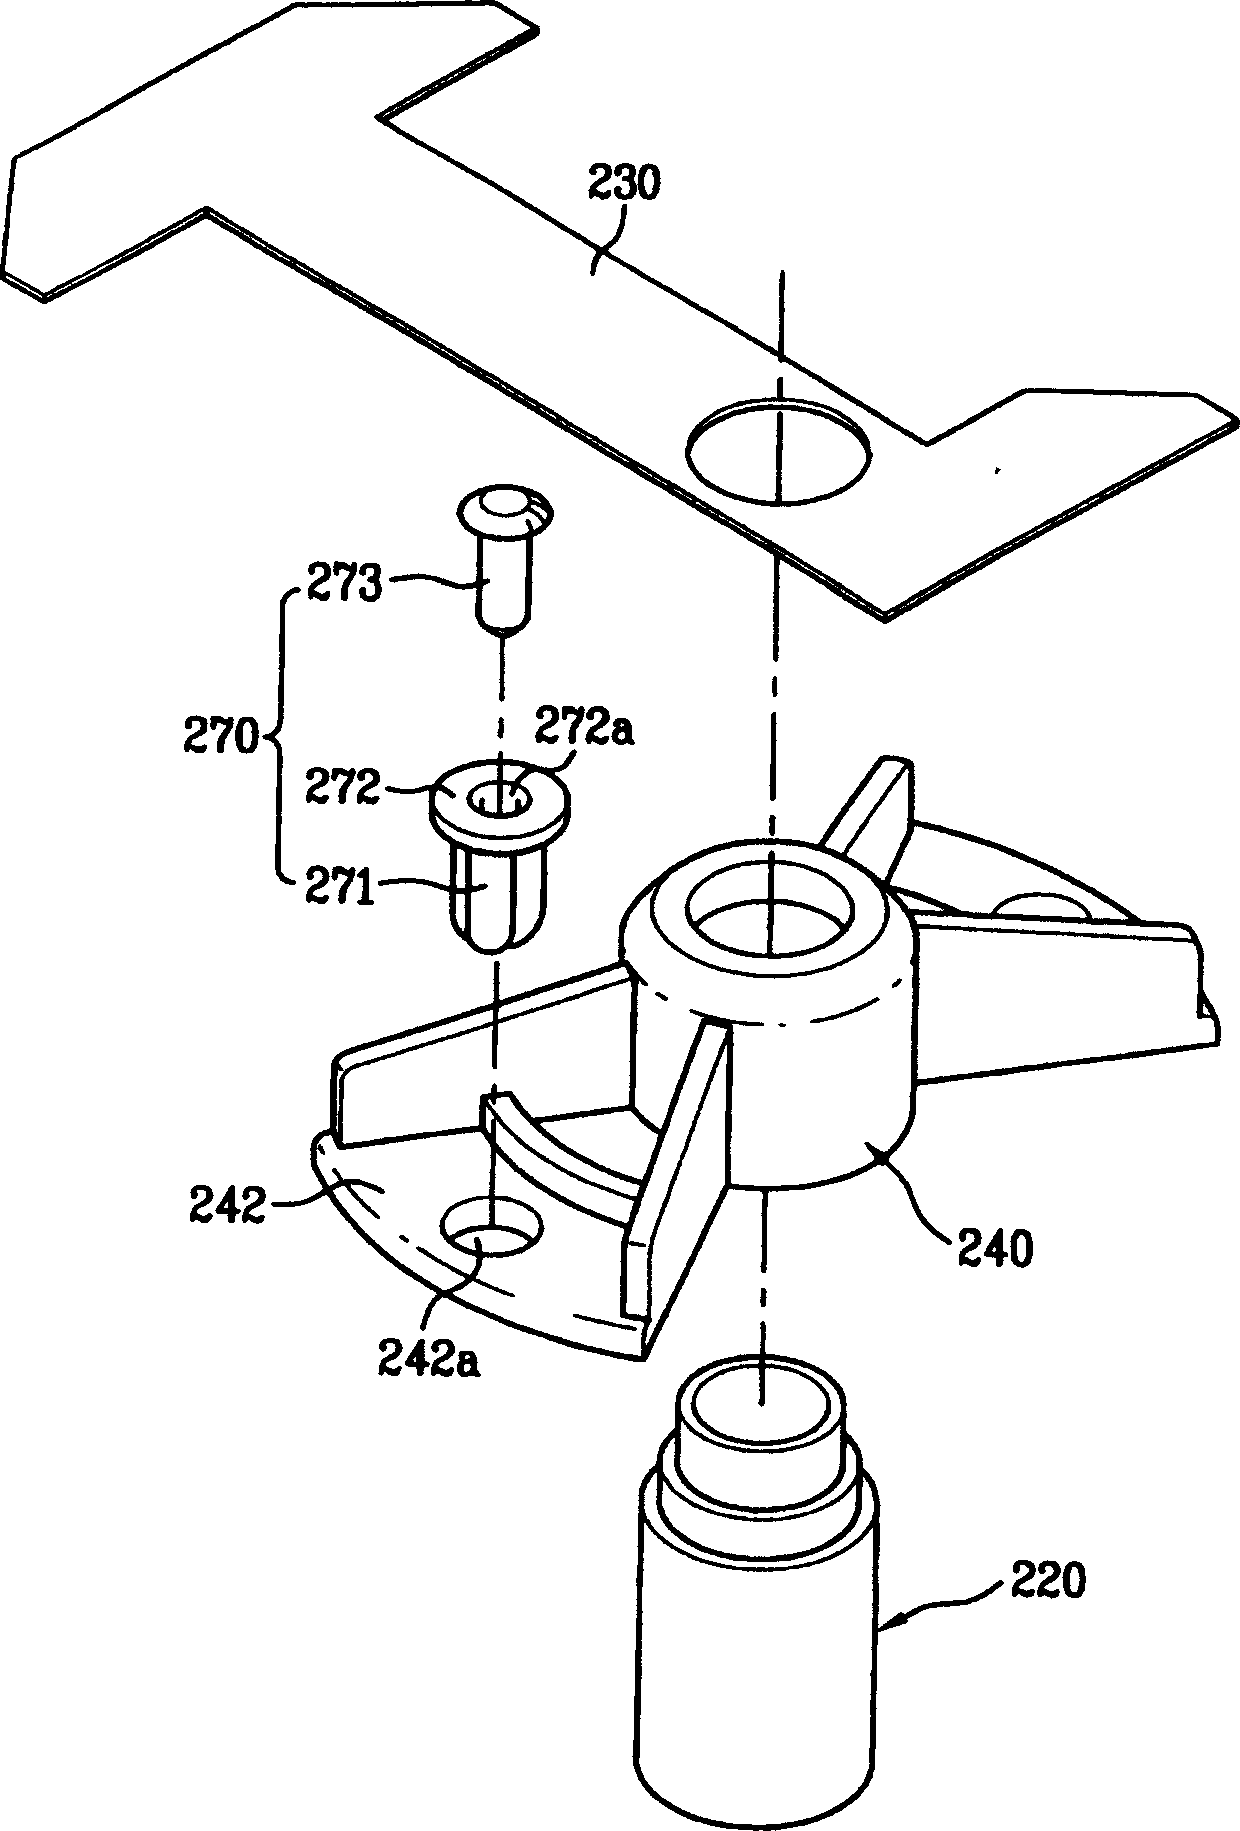 Module of agitation fan in microwave oven